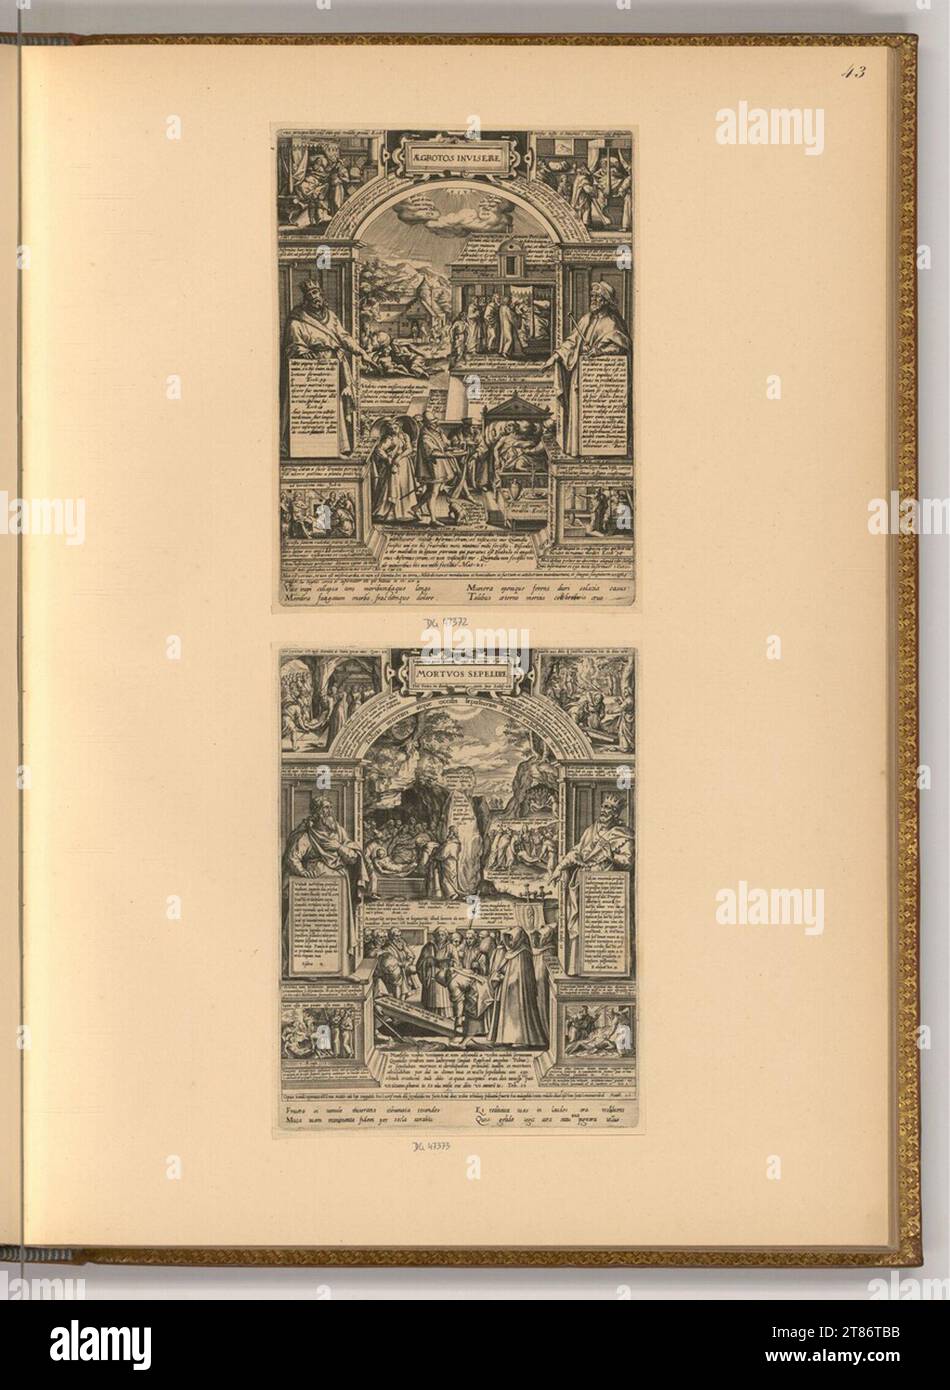 Philipp Galle (an der Entstehung Beteiligte r) visita a los enfermos; enterrados muertos. Grabado de cobre, grabado alrededor de 1577 Foto de stock